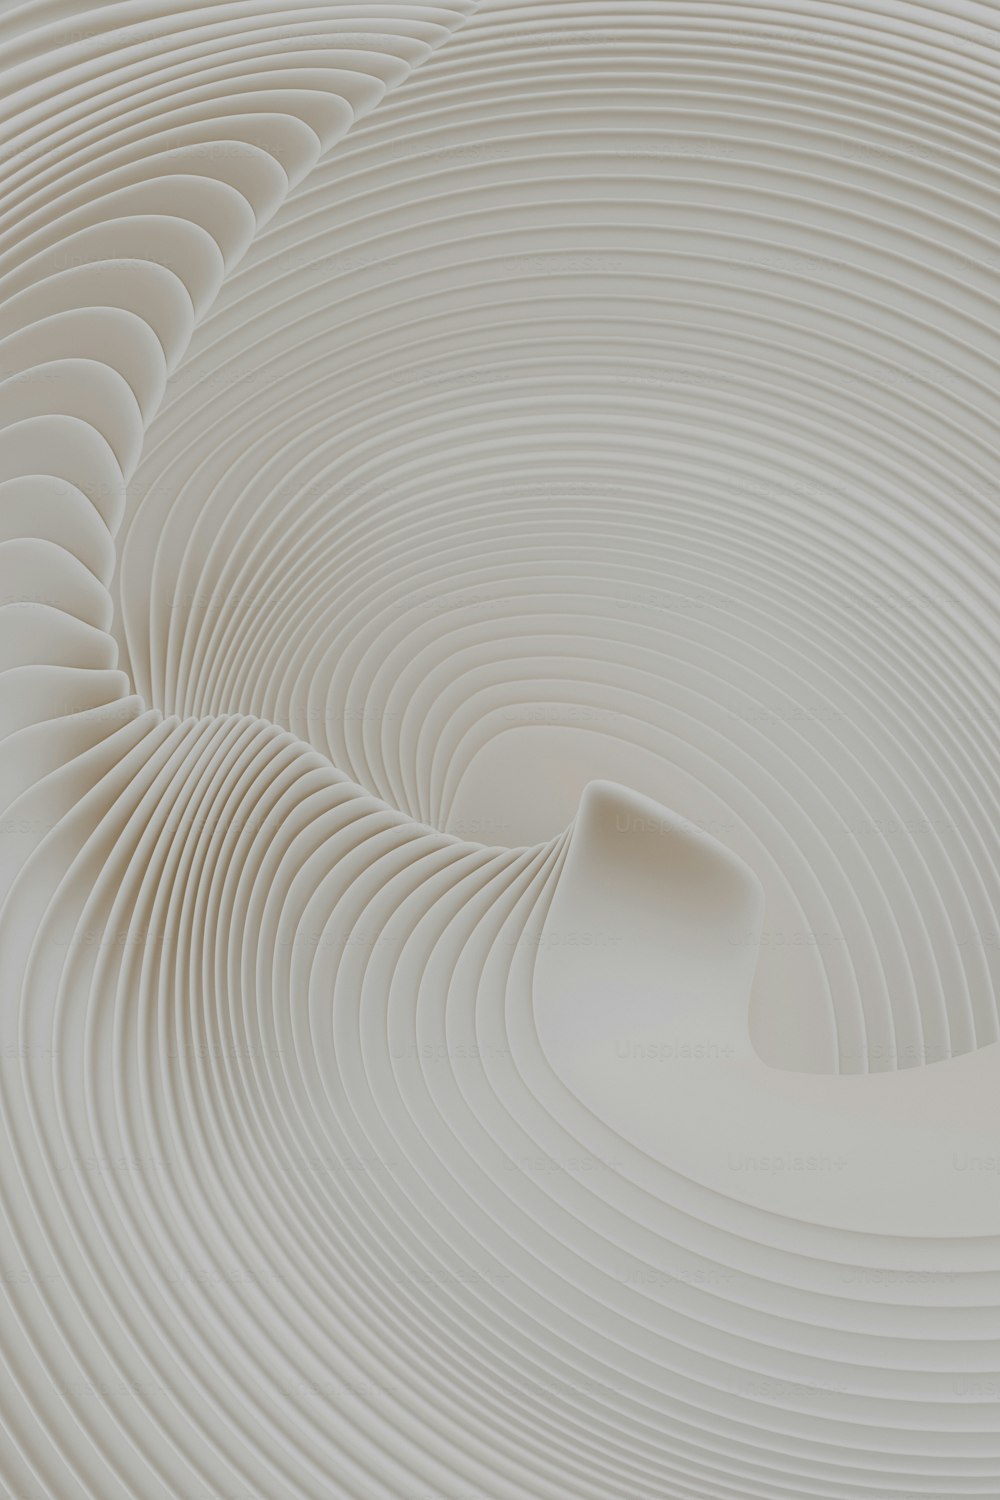 um objeto circular branco com um fundo branco